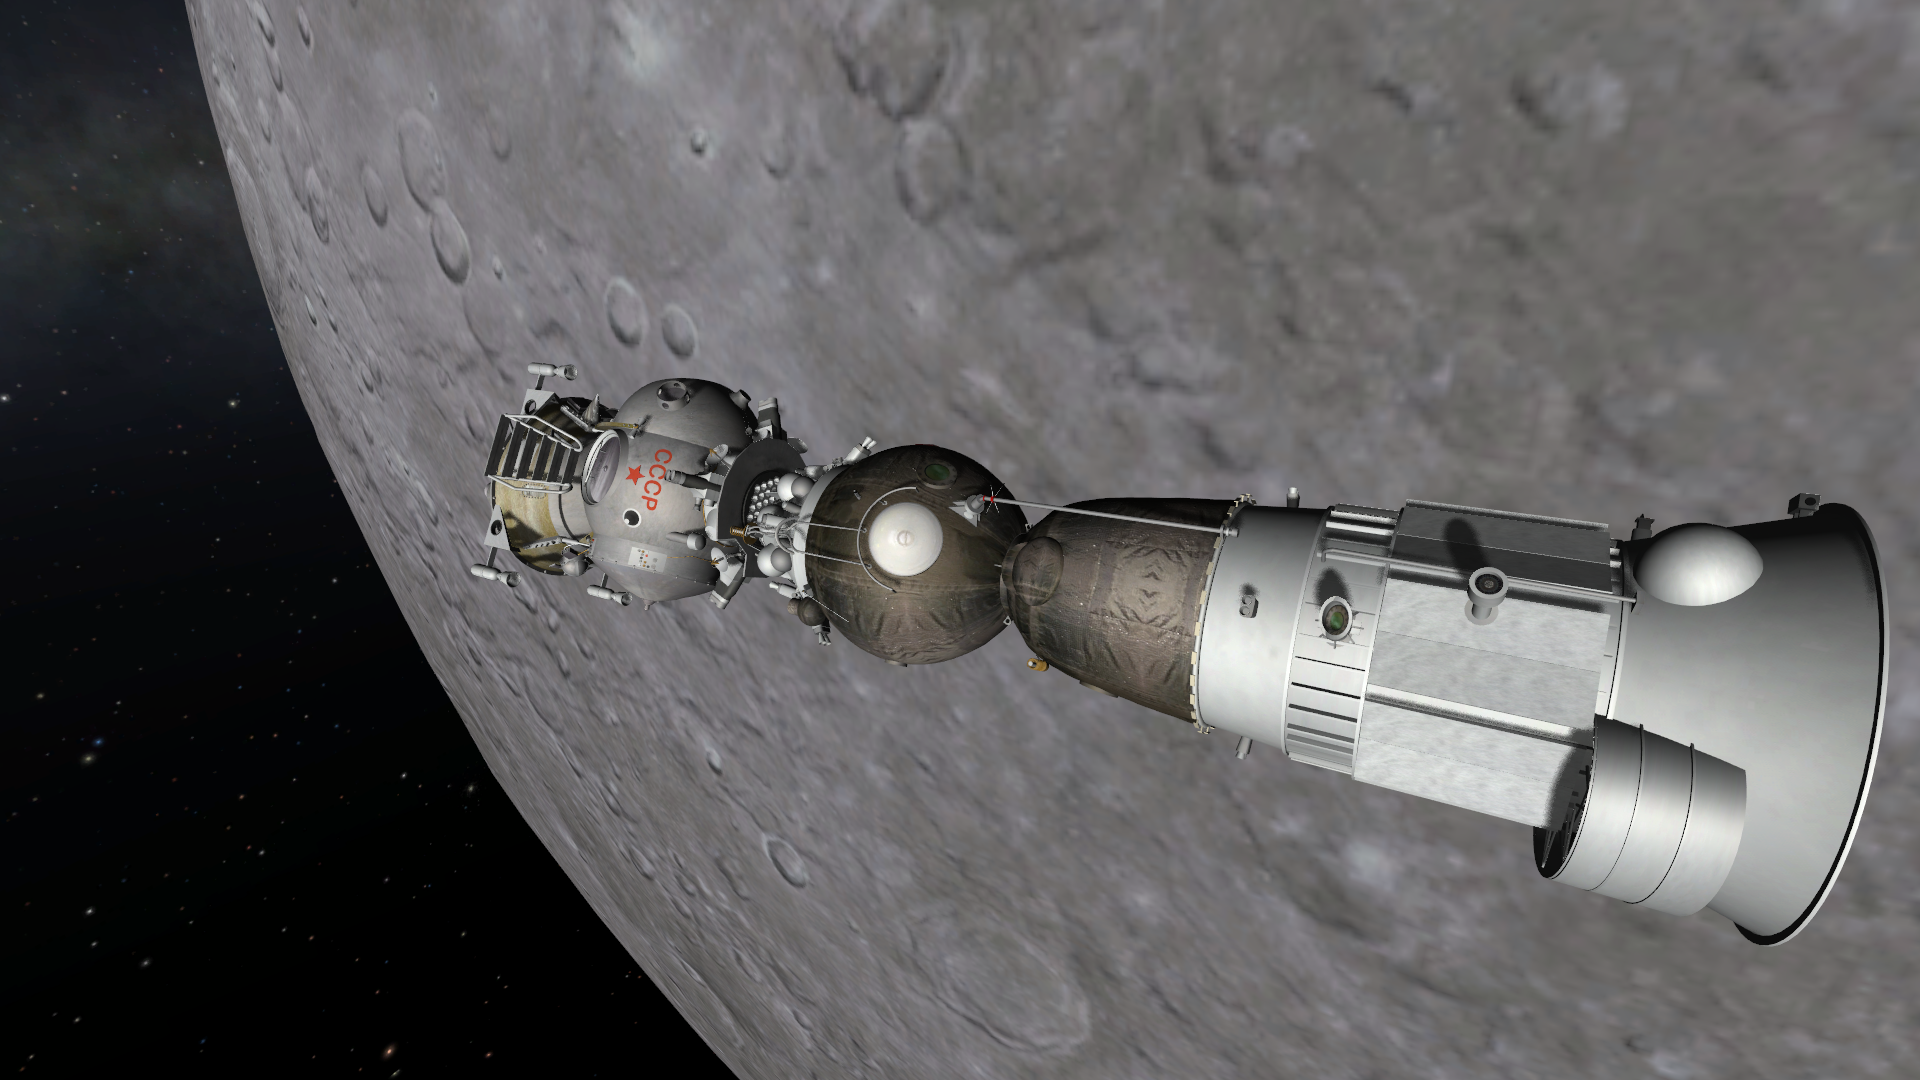 Союз 7к-лок. Космический корабль 7к Союз лок. Лунный орбитальный корабль (лок, 11ф93). Восток-3 пилотируемый космический корабль.